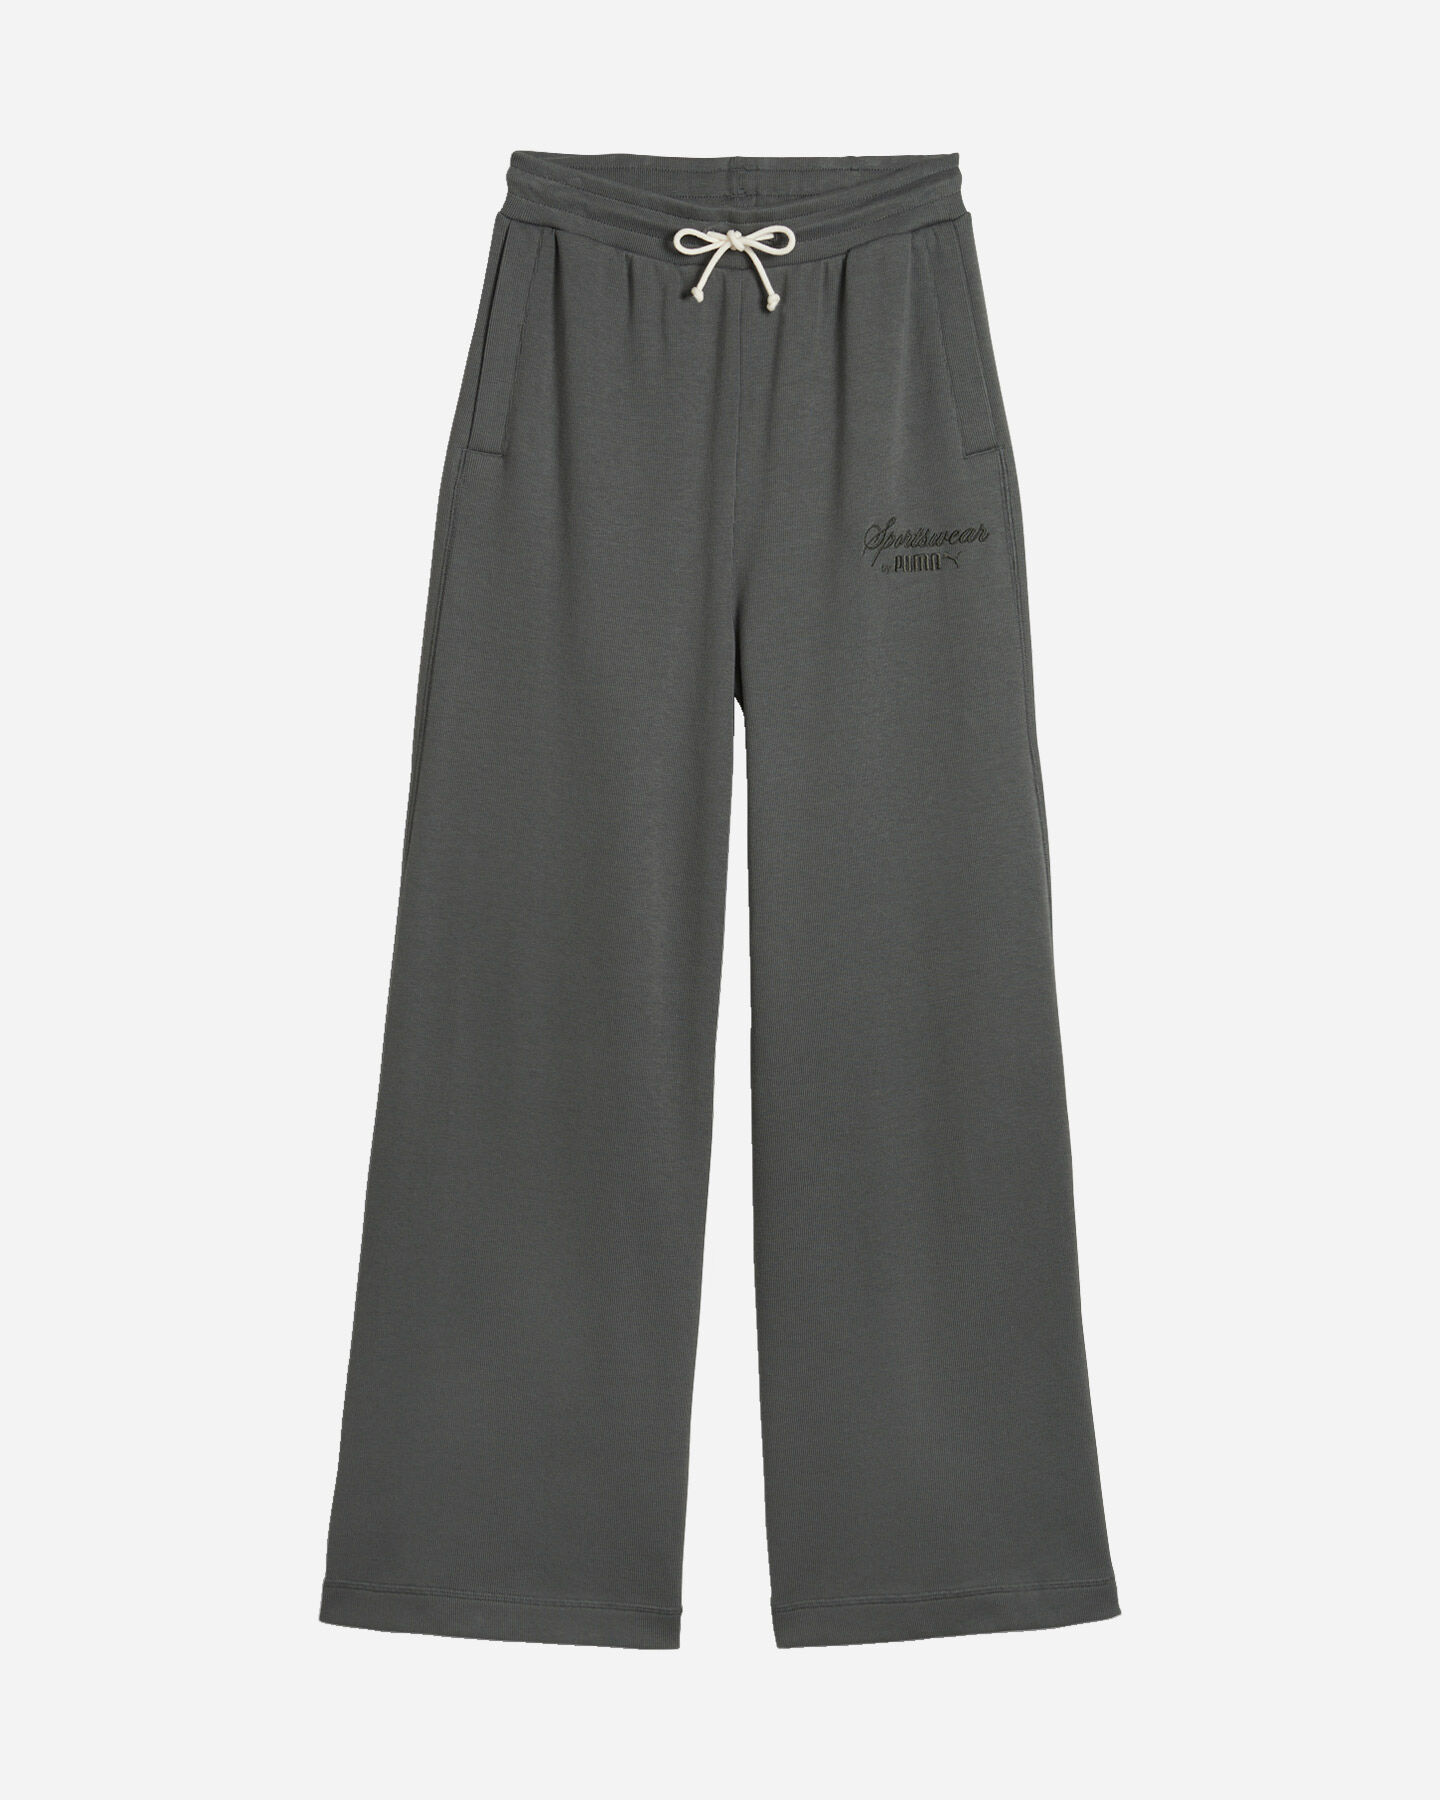  Pantalone PUMA CLASSICS W S5662224|80|XS scatto 0